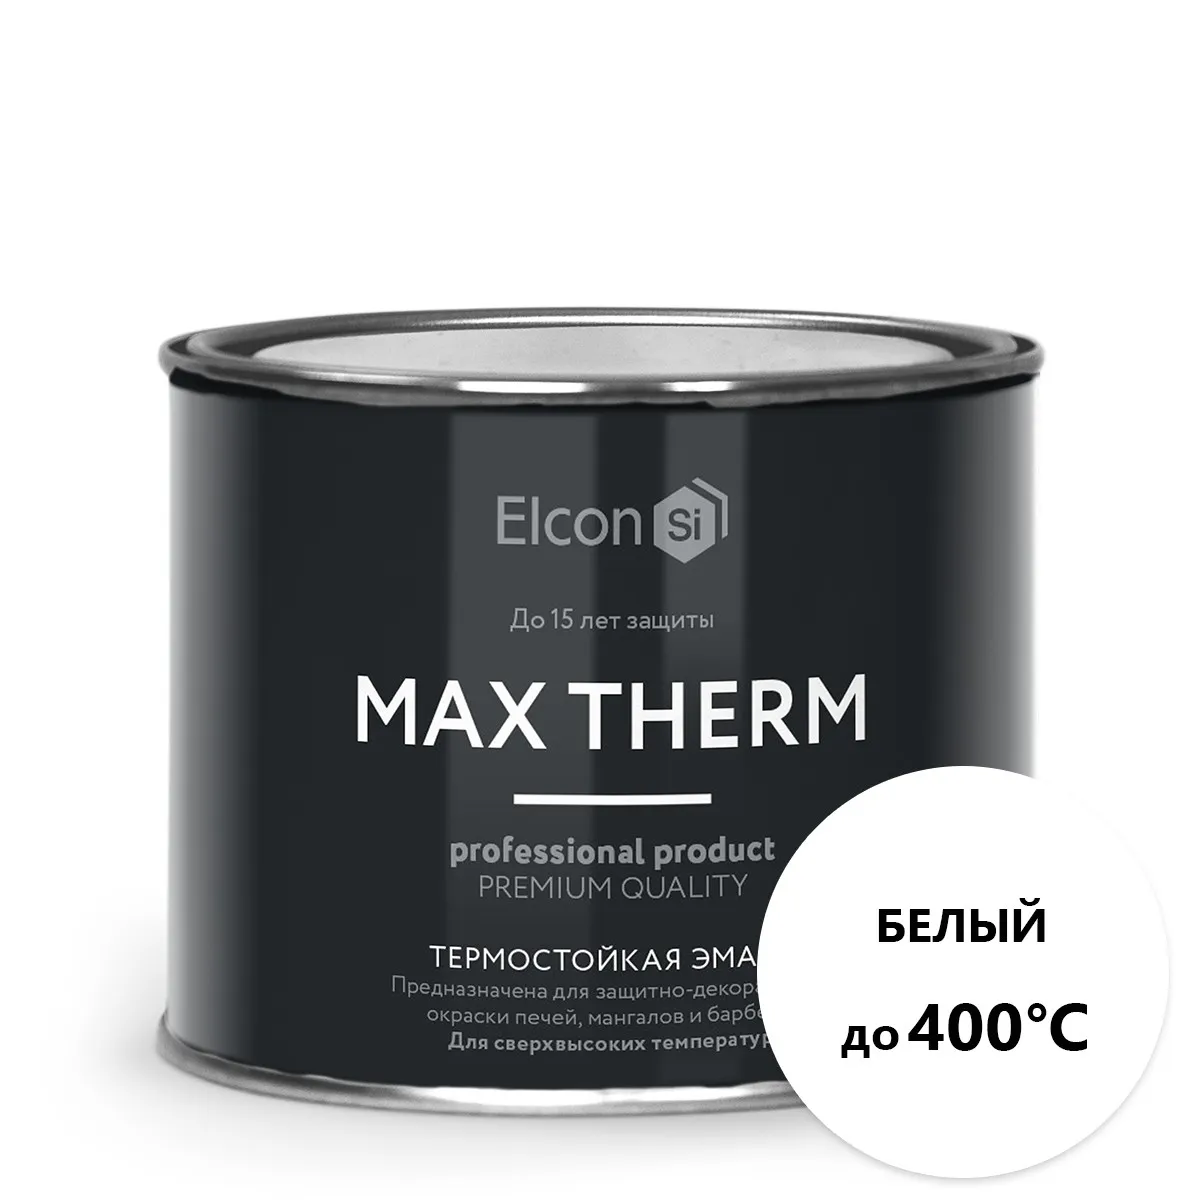 Термостойкая антикоррозийная эмаль Max Therm белый 0,4кг; 400°С#1